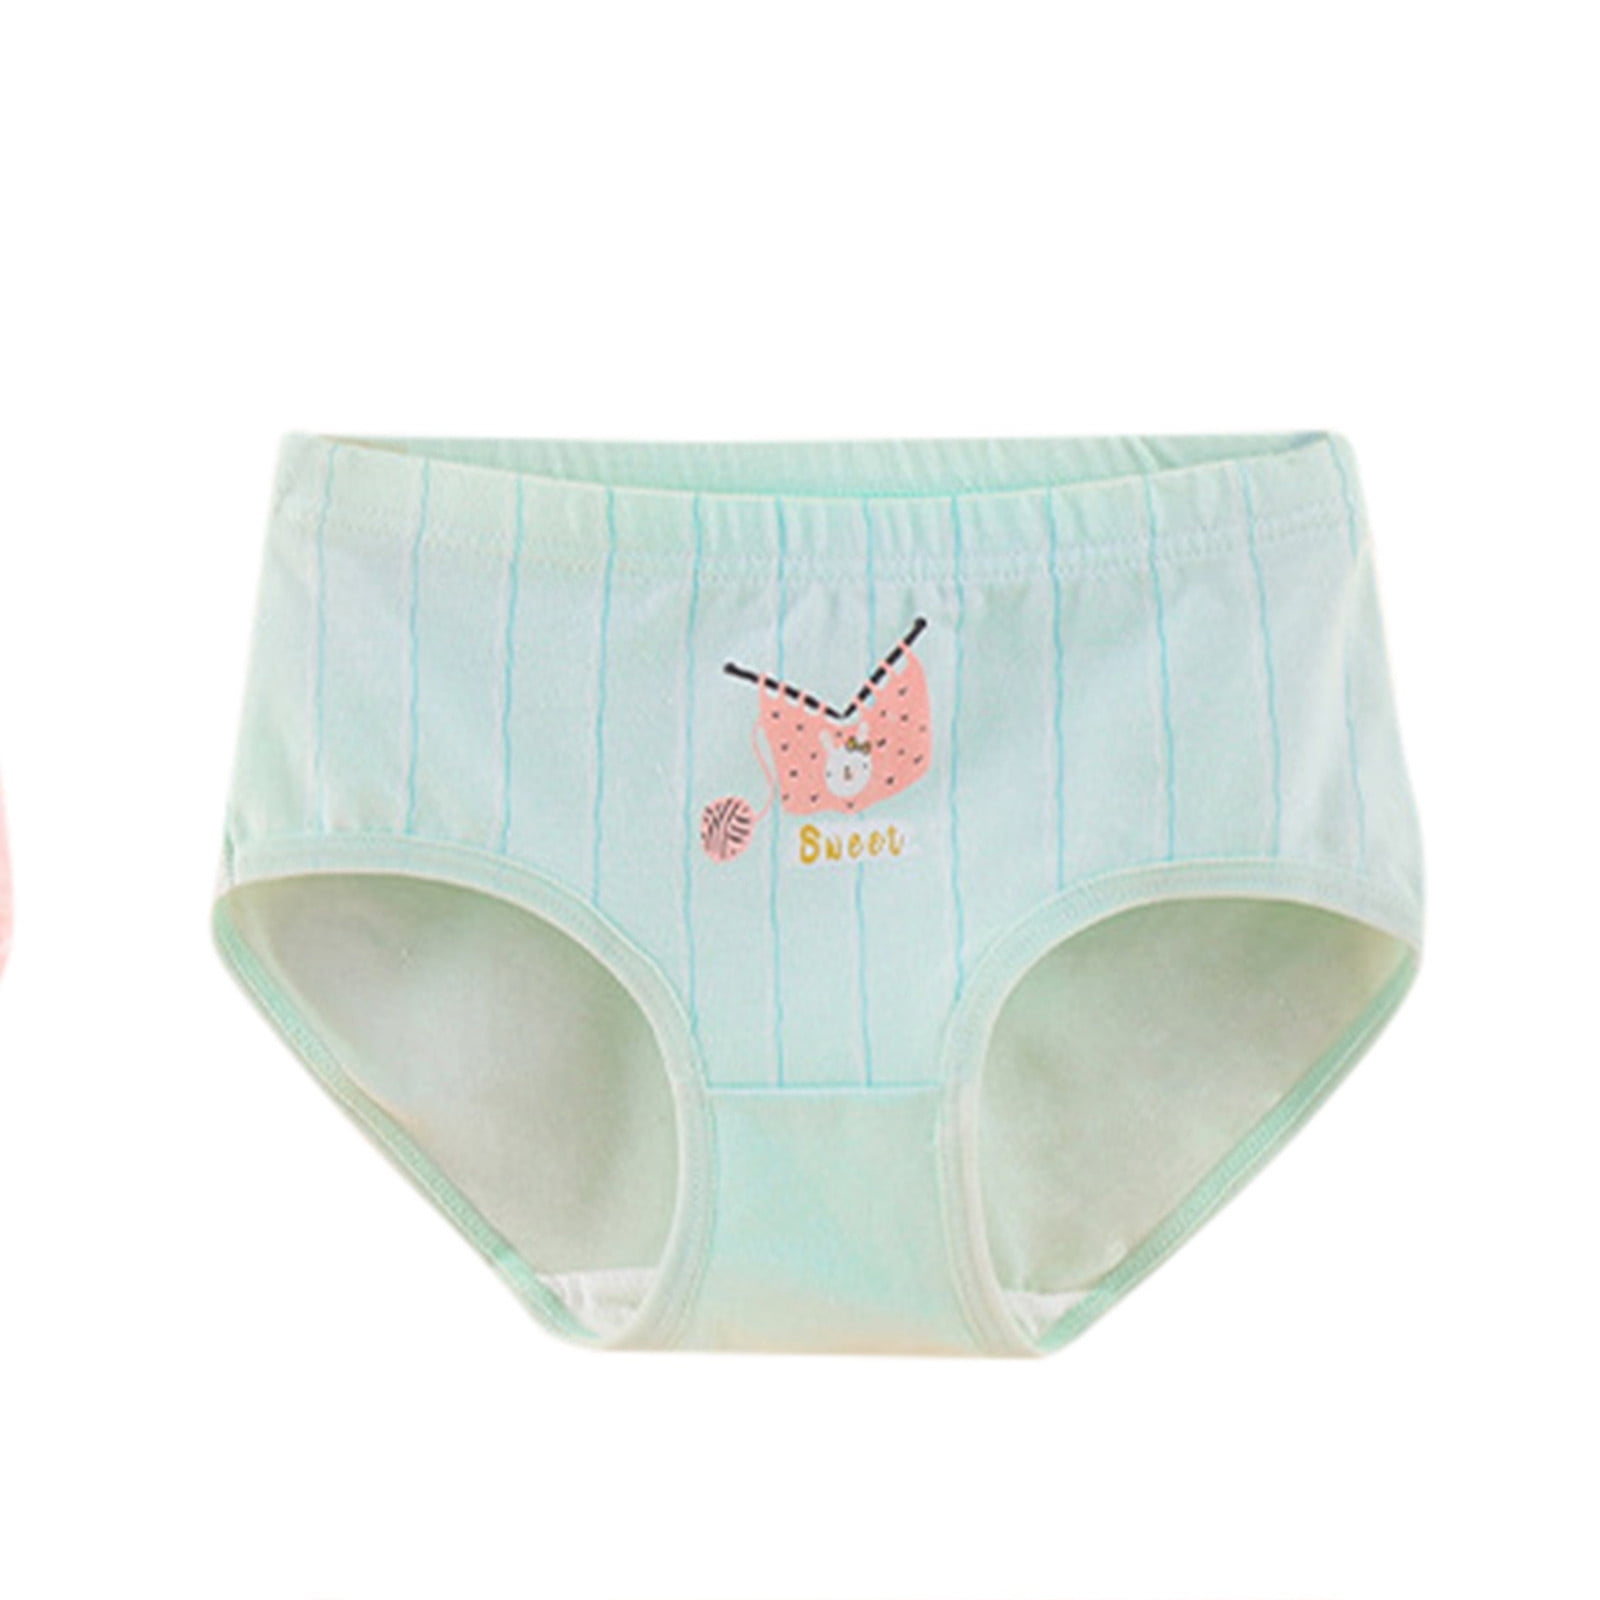 Kids Toddler Baby Girls Underwear Cartoon Letter Print Shorts Pants Cotton  Briefs Underwear 4PCS Girl Underpants Size 12 Girls Underwear